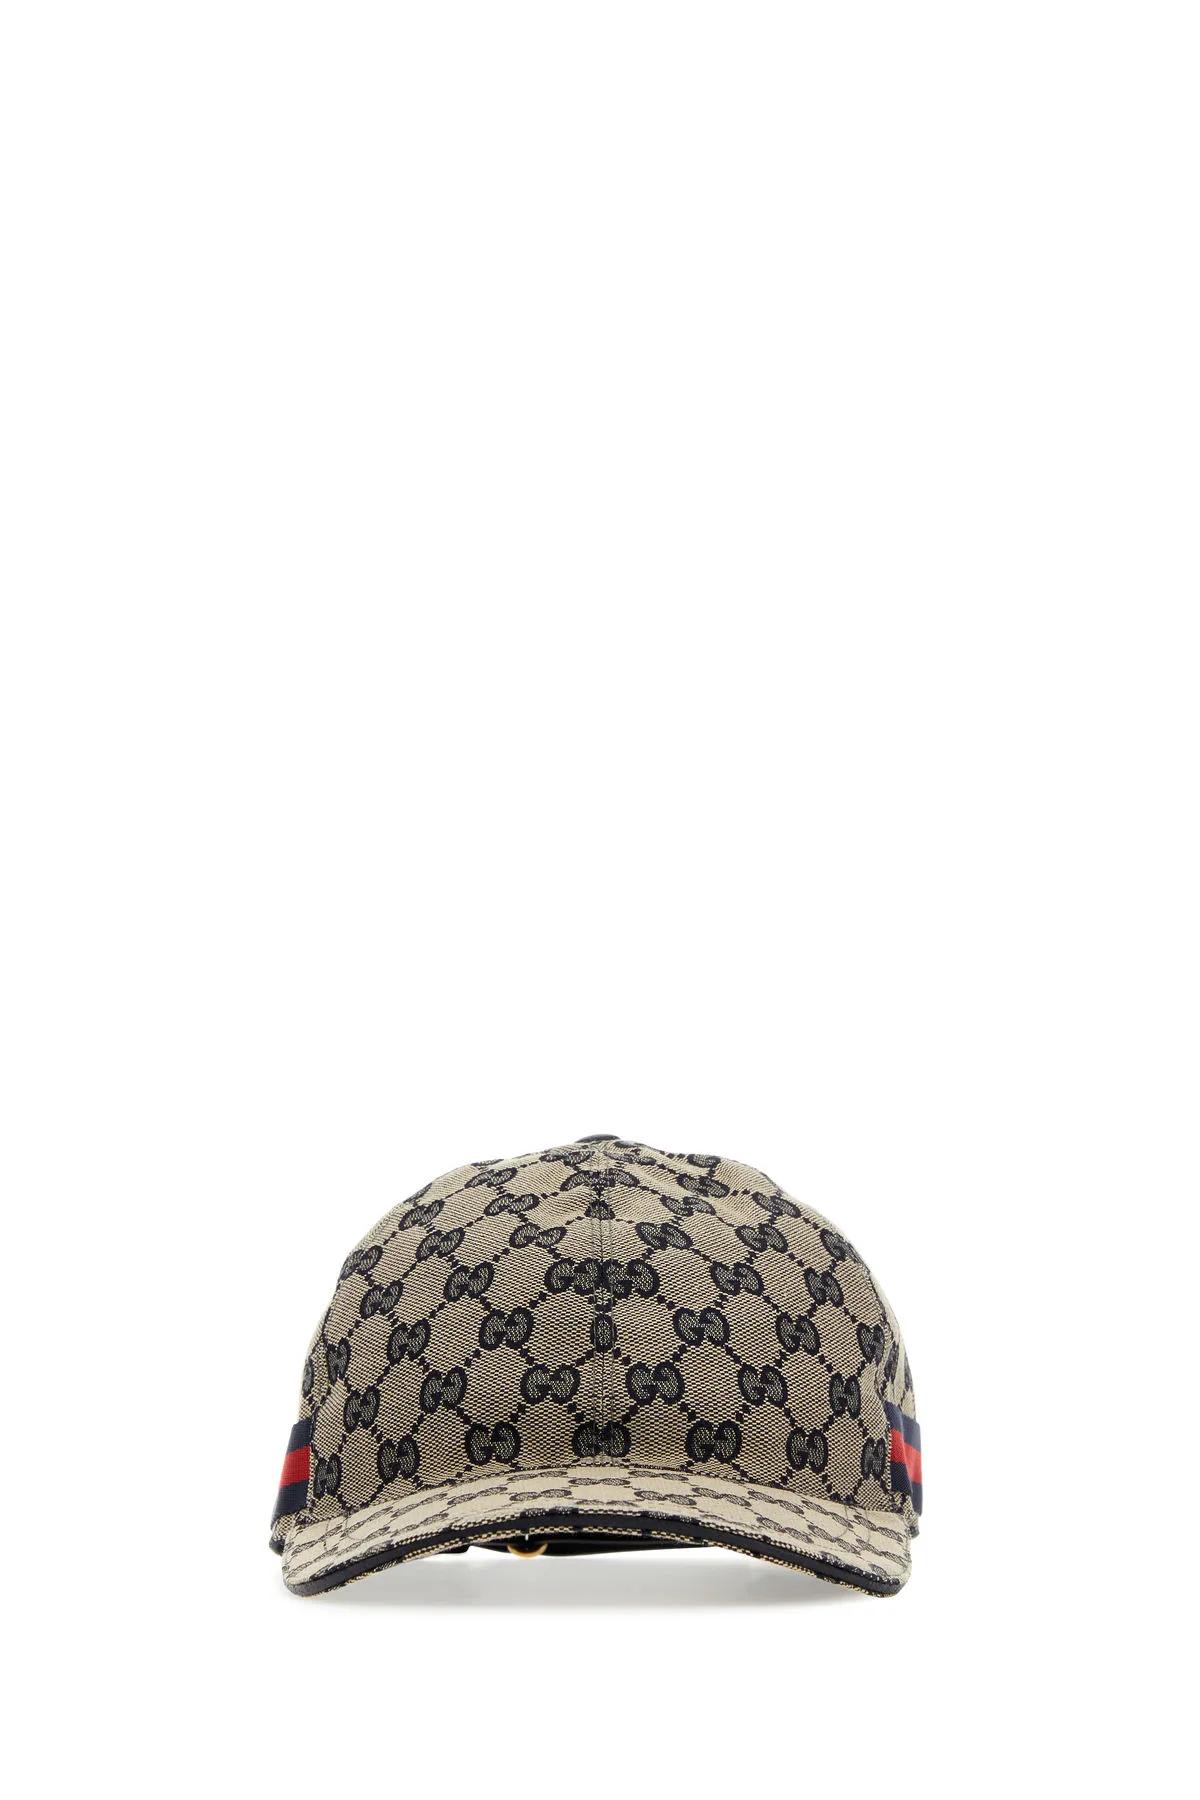 Gucci Gg Supreme Fabric Baseball Cap In Beige